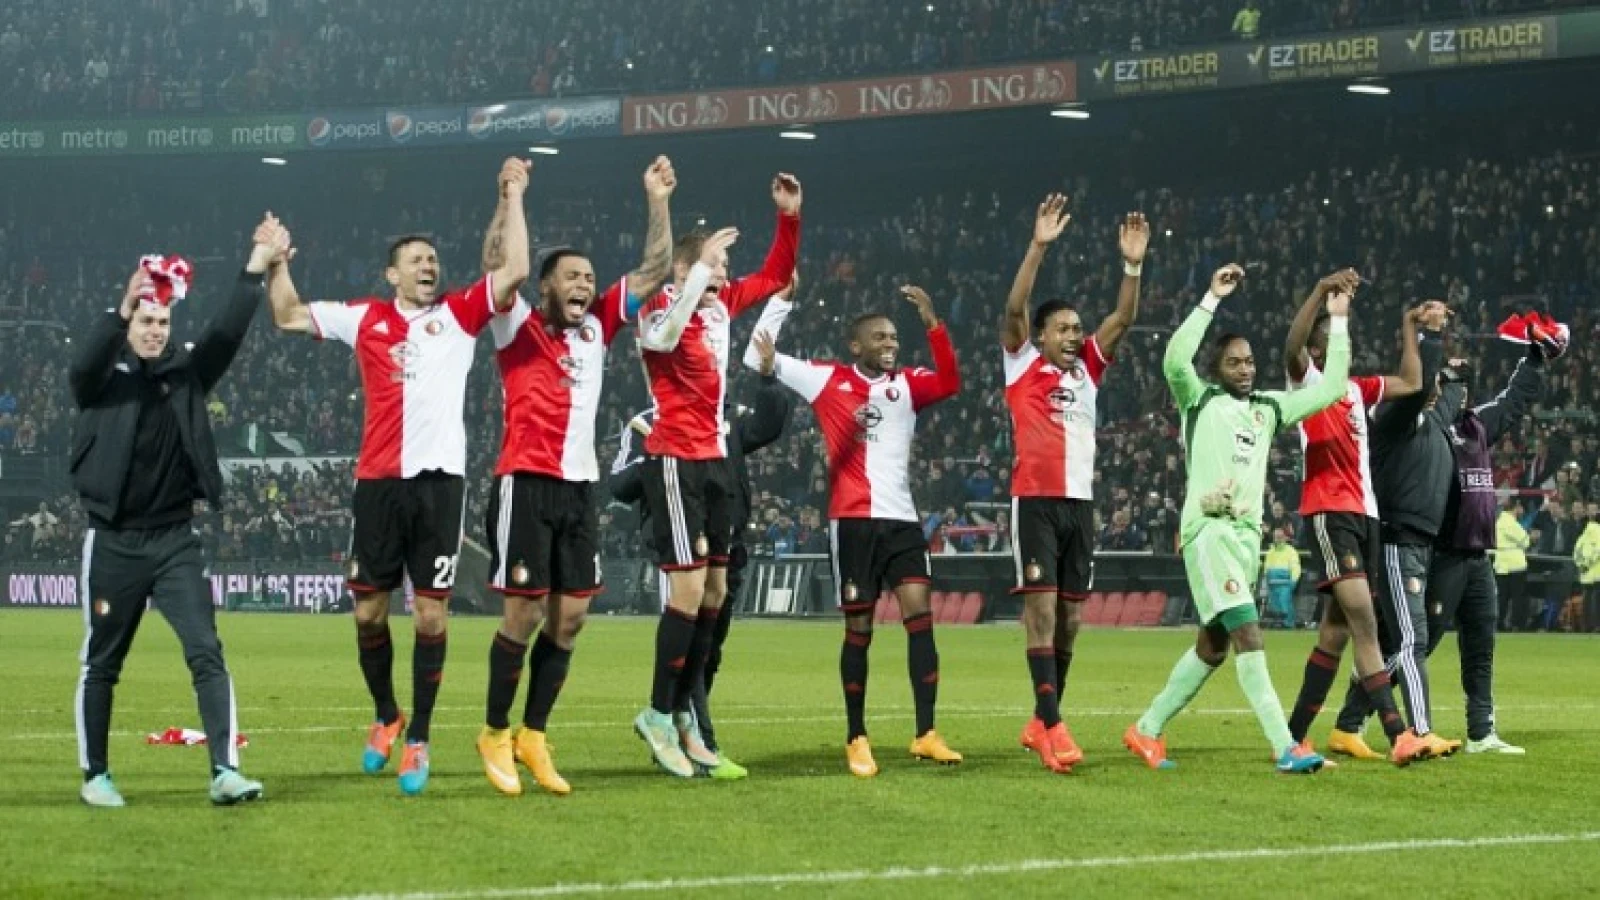 LIVE | Loting Europa League | Feyenoord in lastige poule!